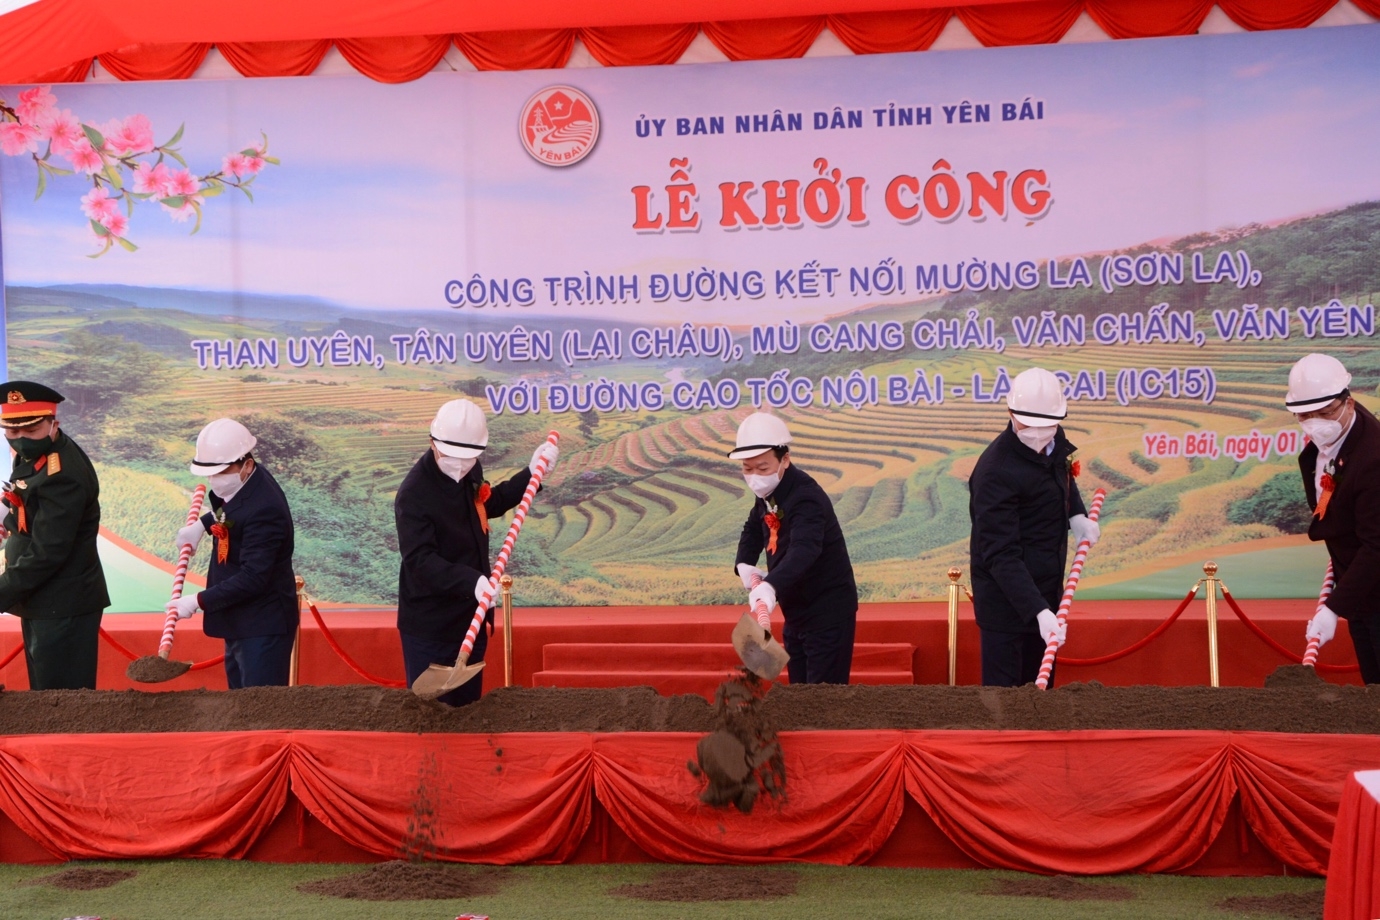 Yên Bái khởi công công trình đường nối cao tốc Nội Bài-Lào Cai